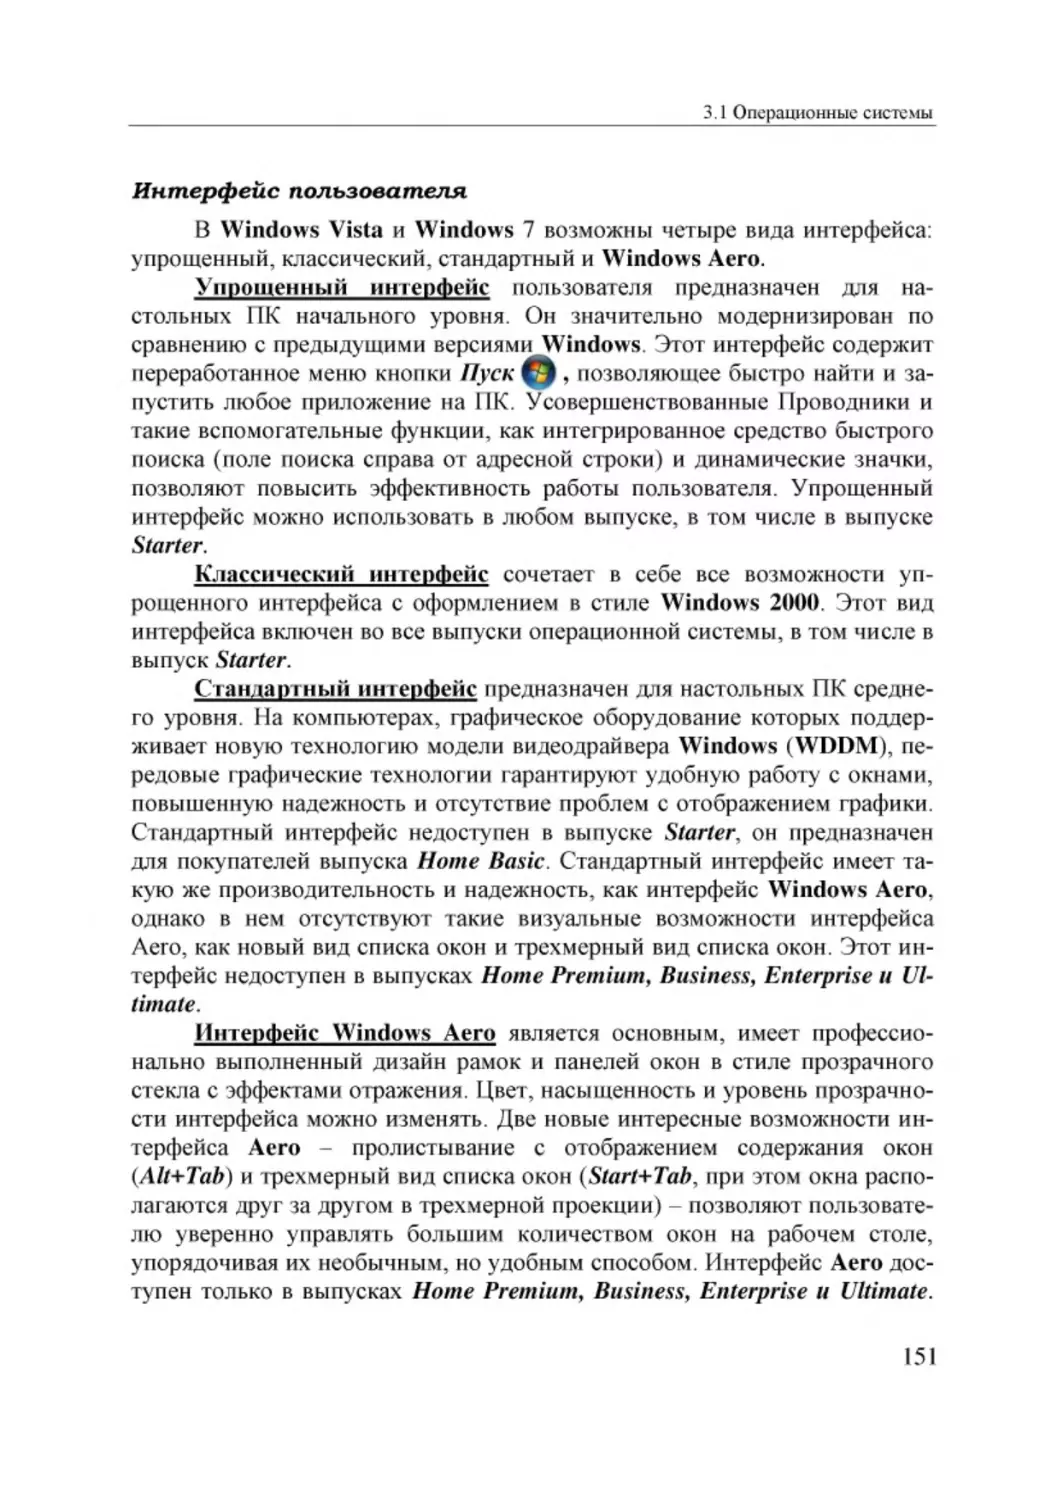 Informatika_Uchebnik_dlya_vuzov_2010 151